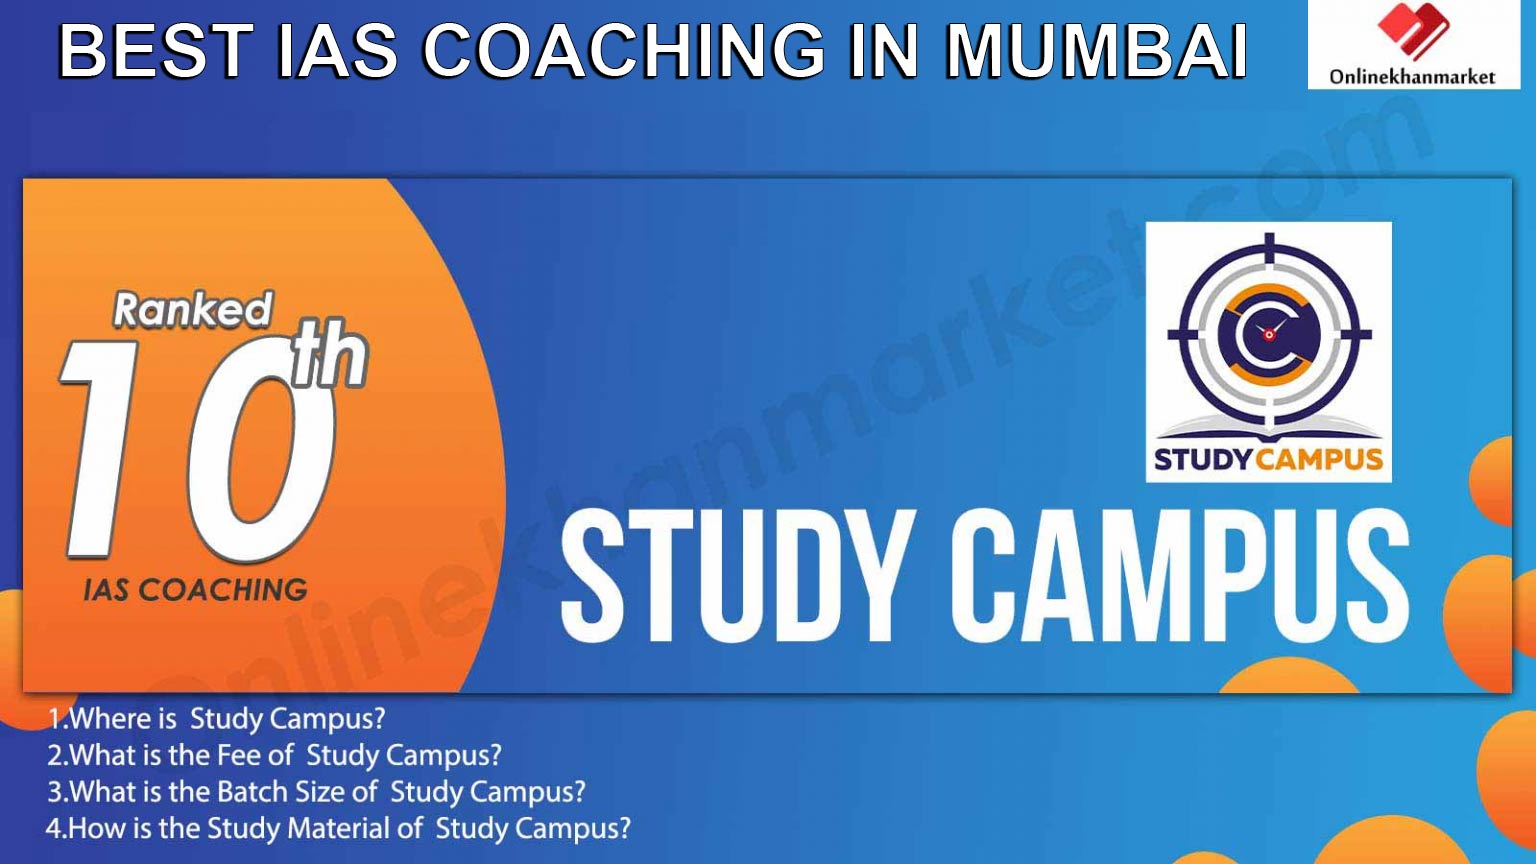 Best UPSC Coaching in Mumbai